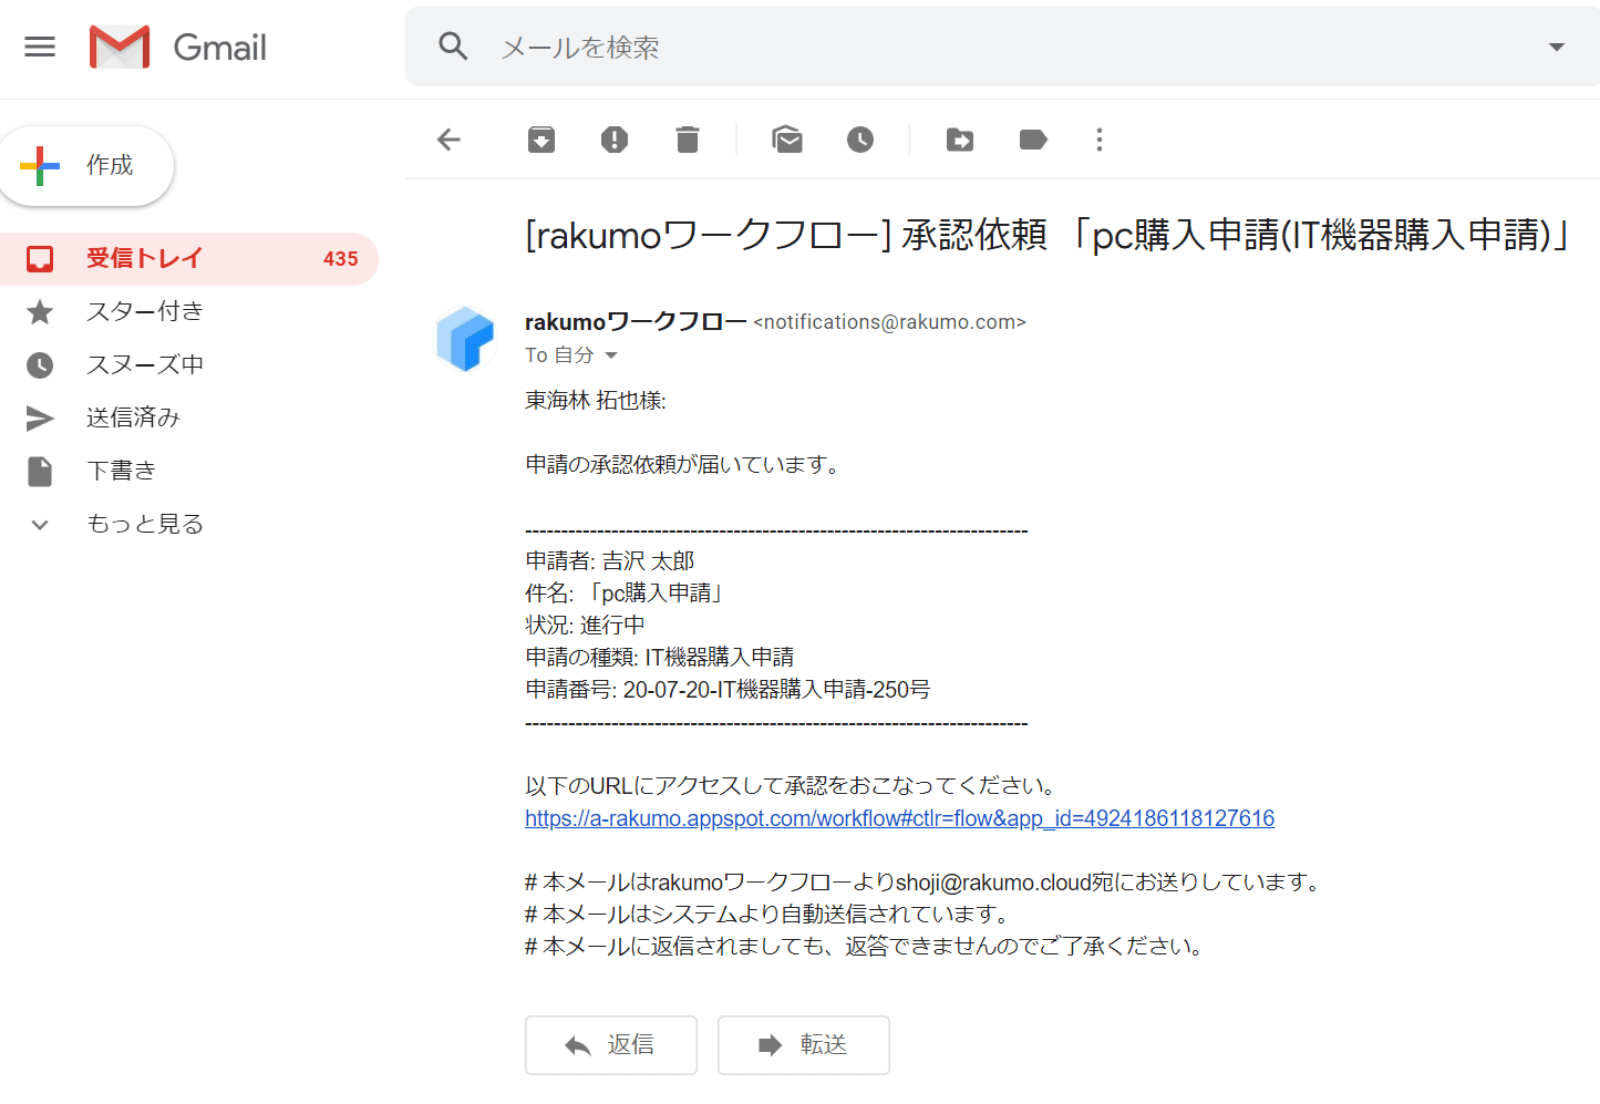 rakumo ワークフロー 承認依頼のメール通知イメージ